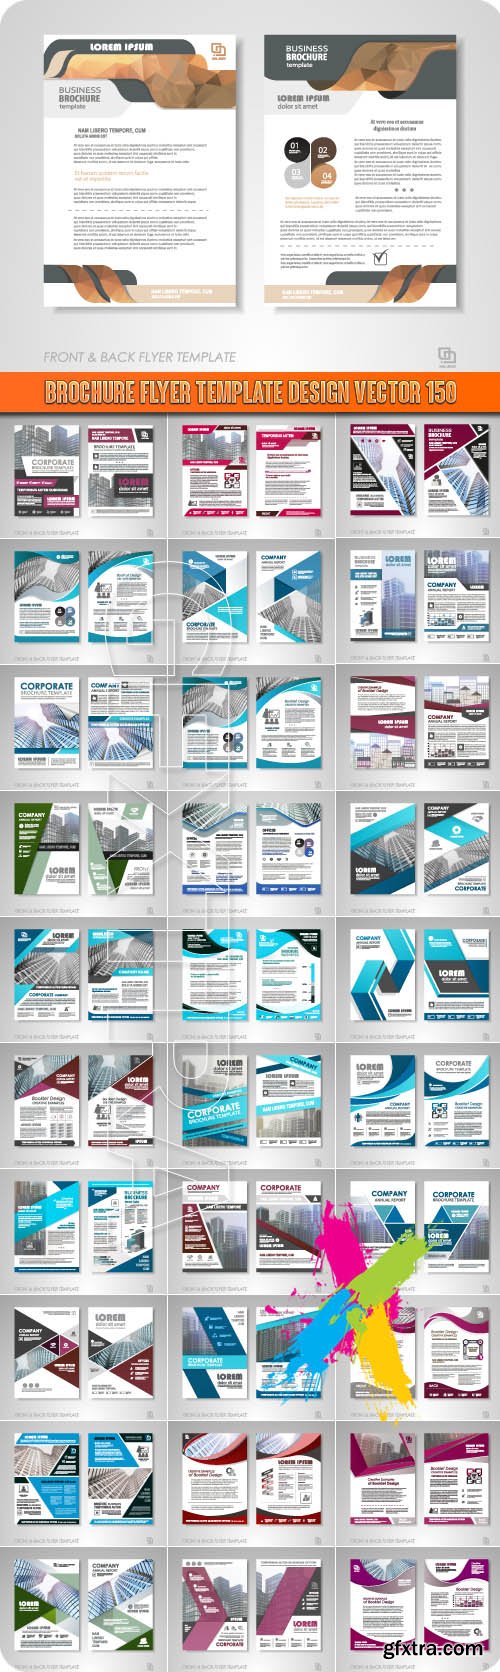 Brochure flyer template design vector 150